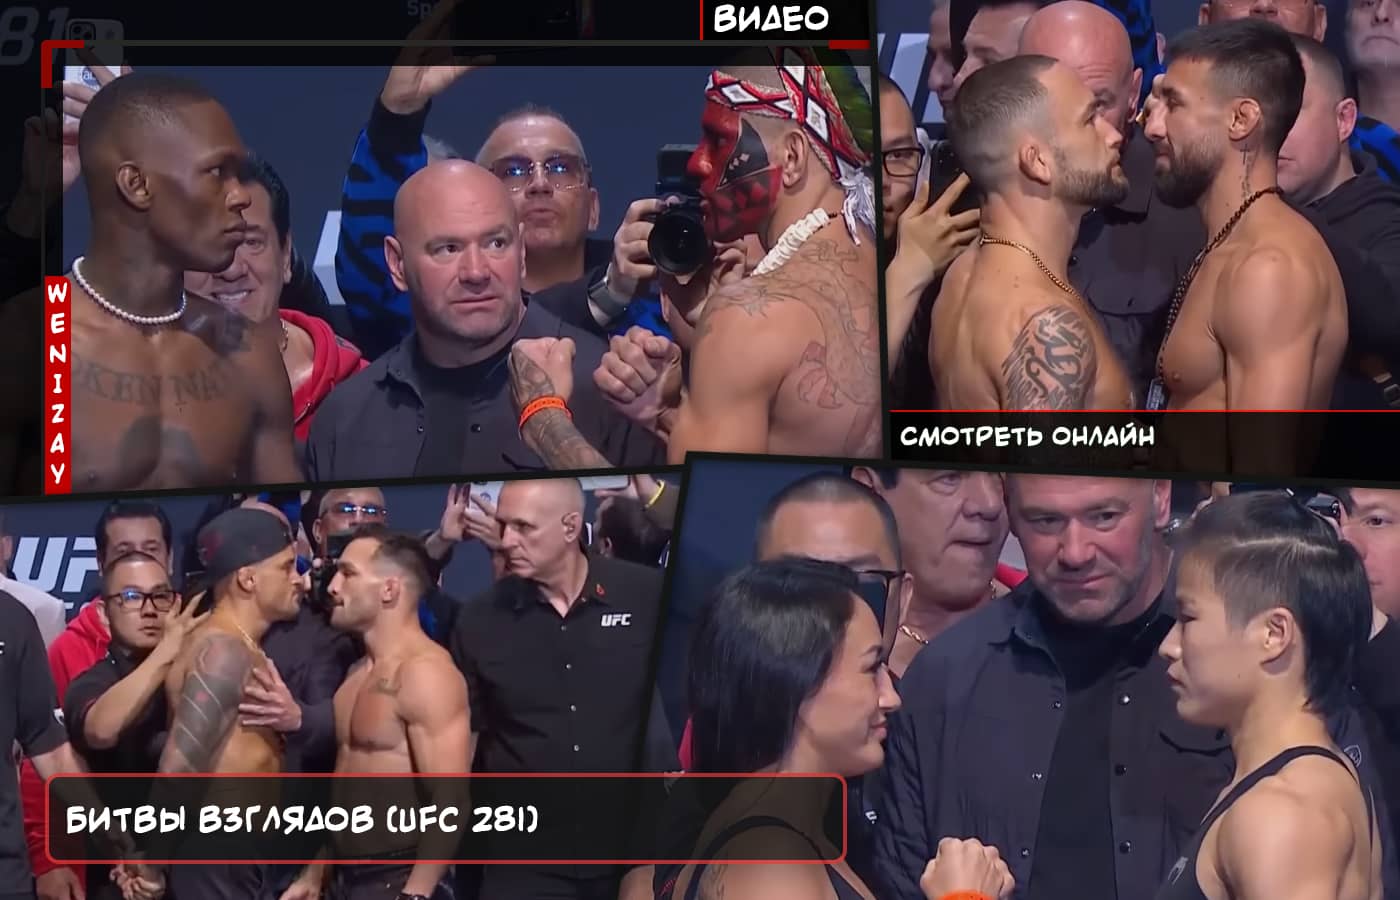 UFC 281, UFC 281 видео, UFC 281 битвы взглядов